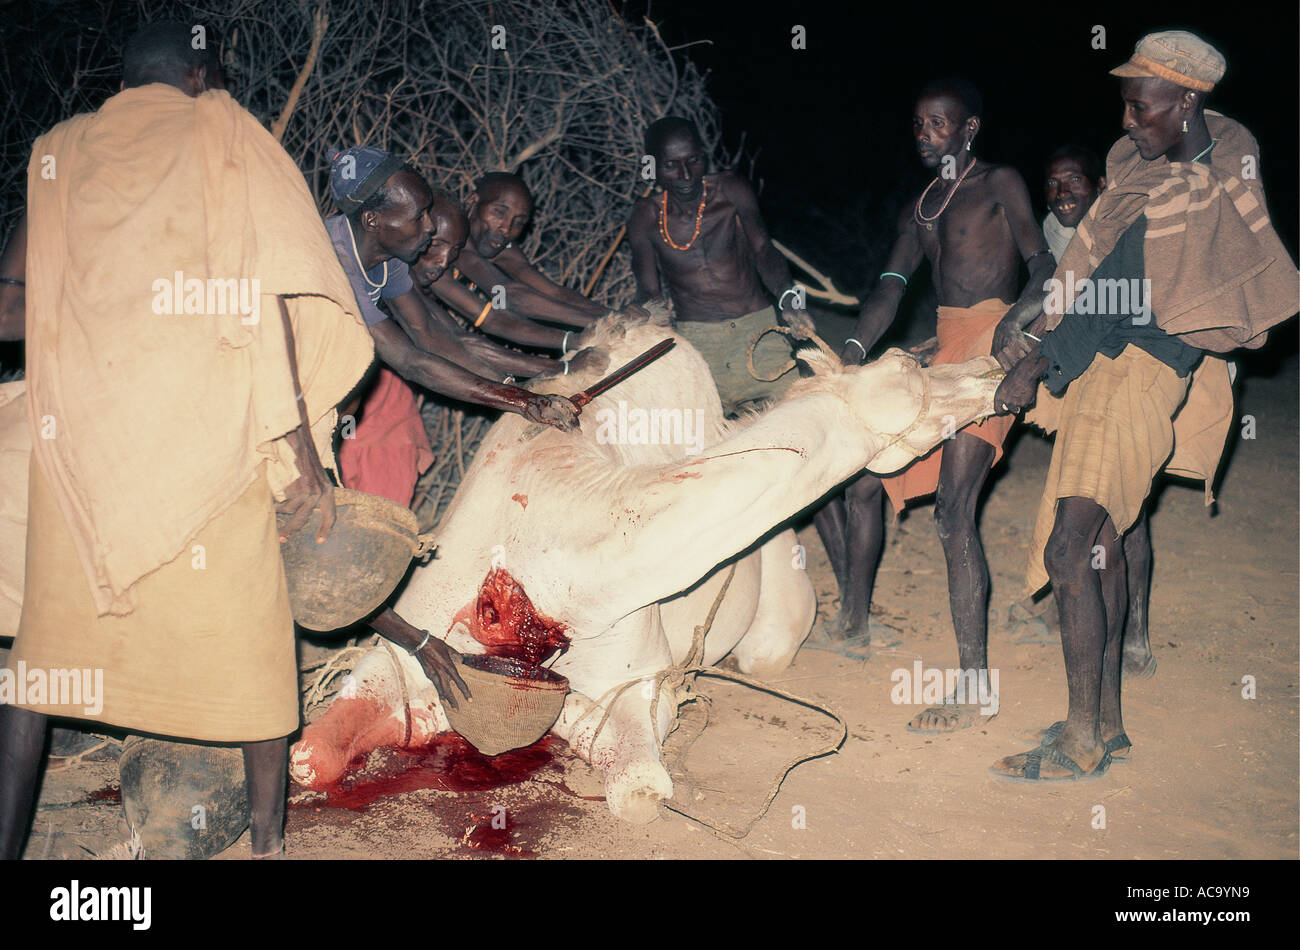 L'abattage d'un chameau Korr le nord du Kenya Afrique de l'Est Banque D'Images